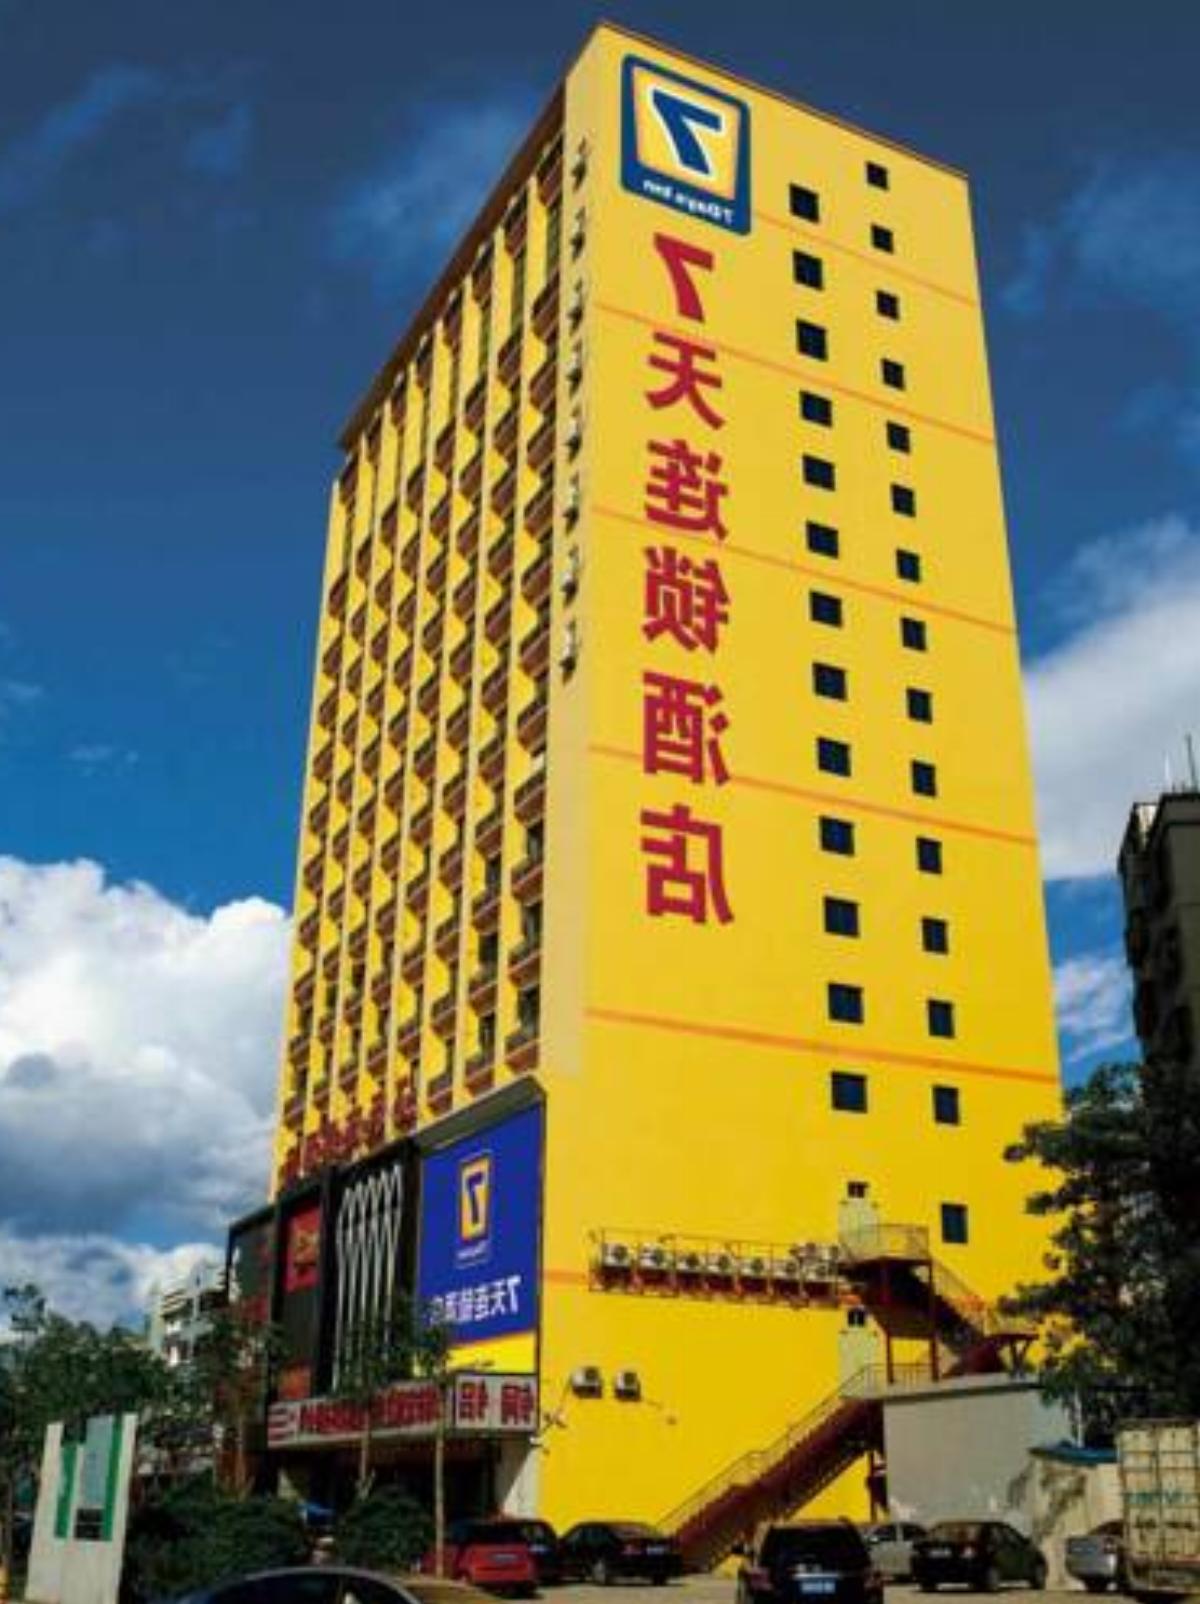 7Days Inn Zhangjiagang Jingang Hotel Zhangjiagang China